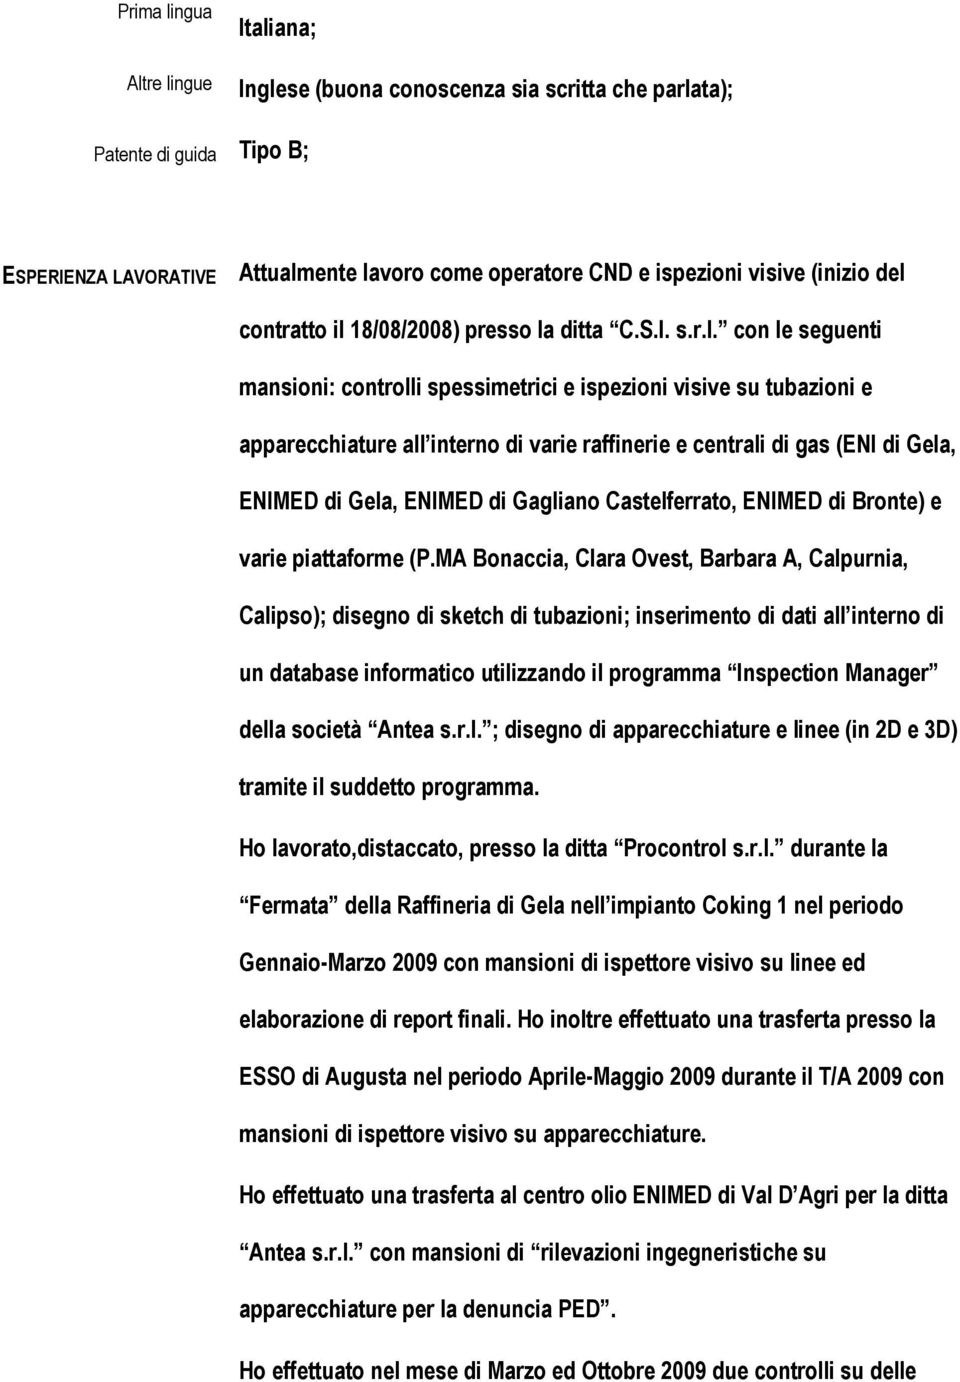 centrali di gas (ENI di Gela, ENIMED di Gela, ENIMED di Gagliano Castelferrato, ENIMED di Bronte) e varie piattaforme (P.